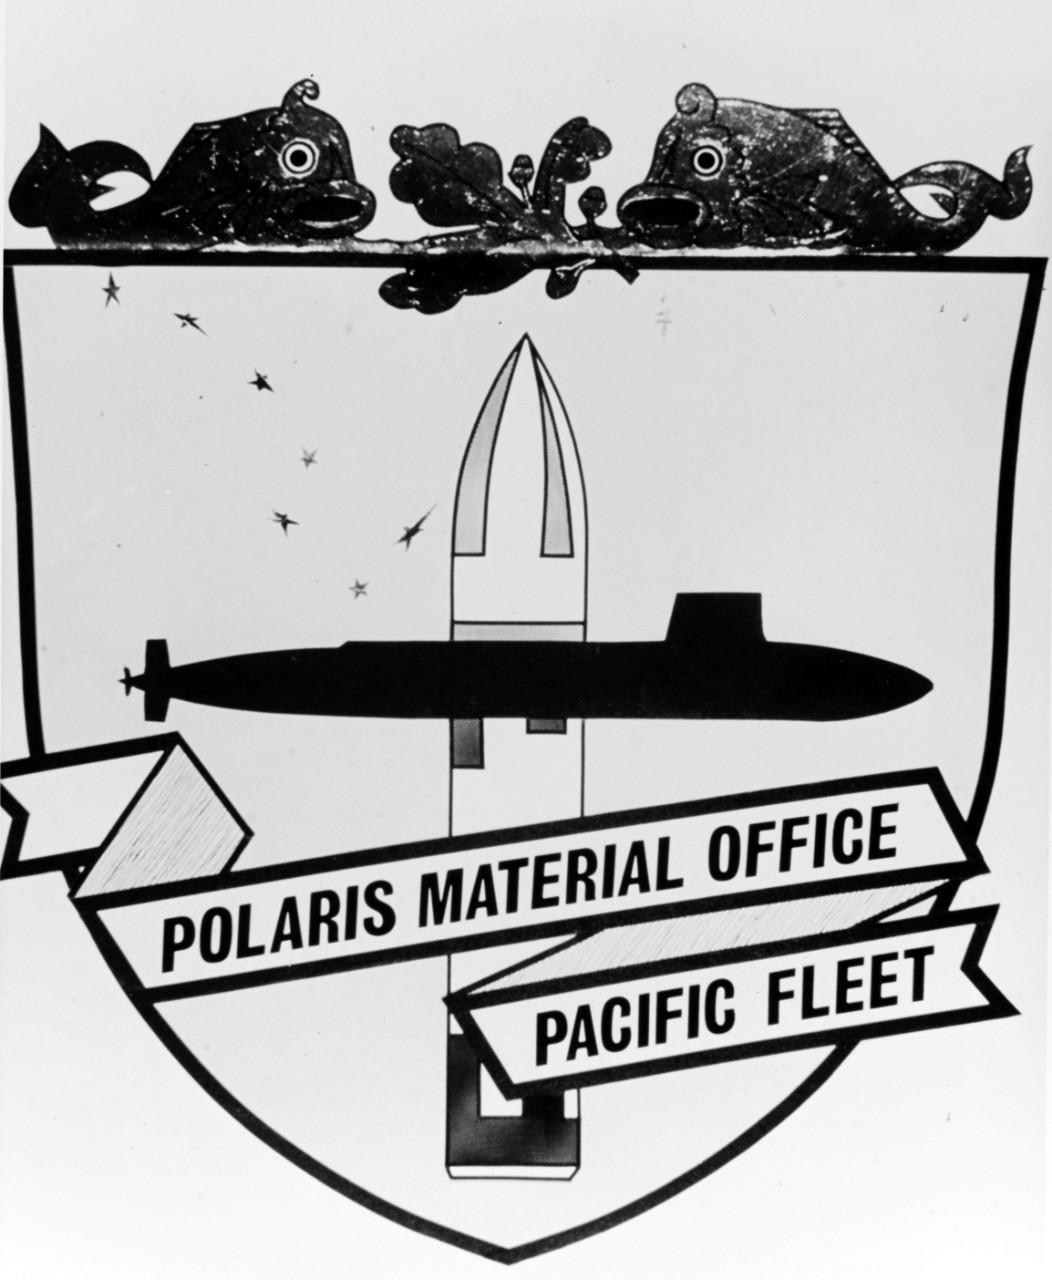 Insignia:  Polaris Material Office, Pacific Fleet